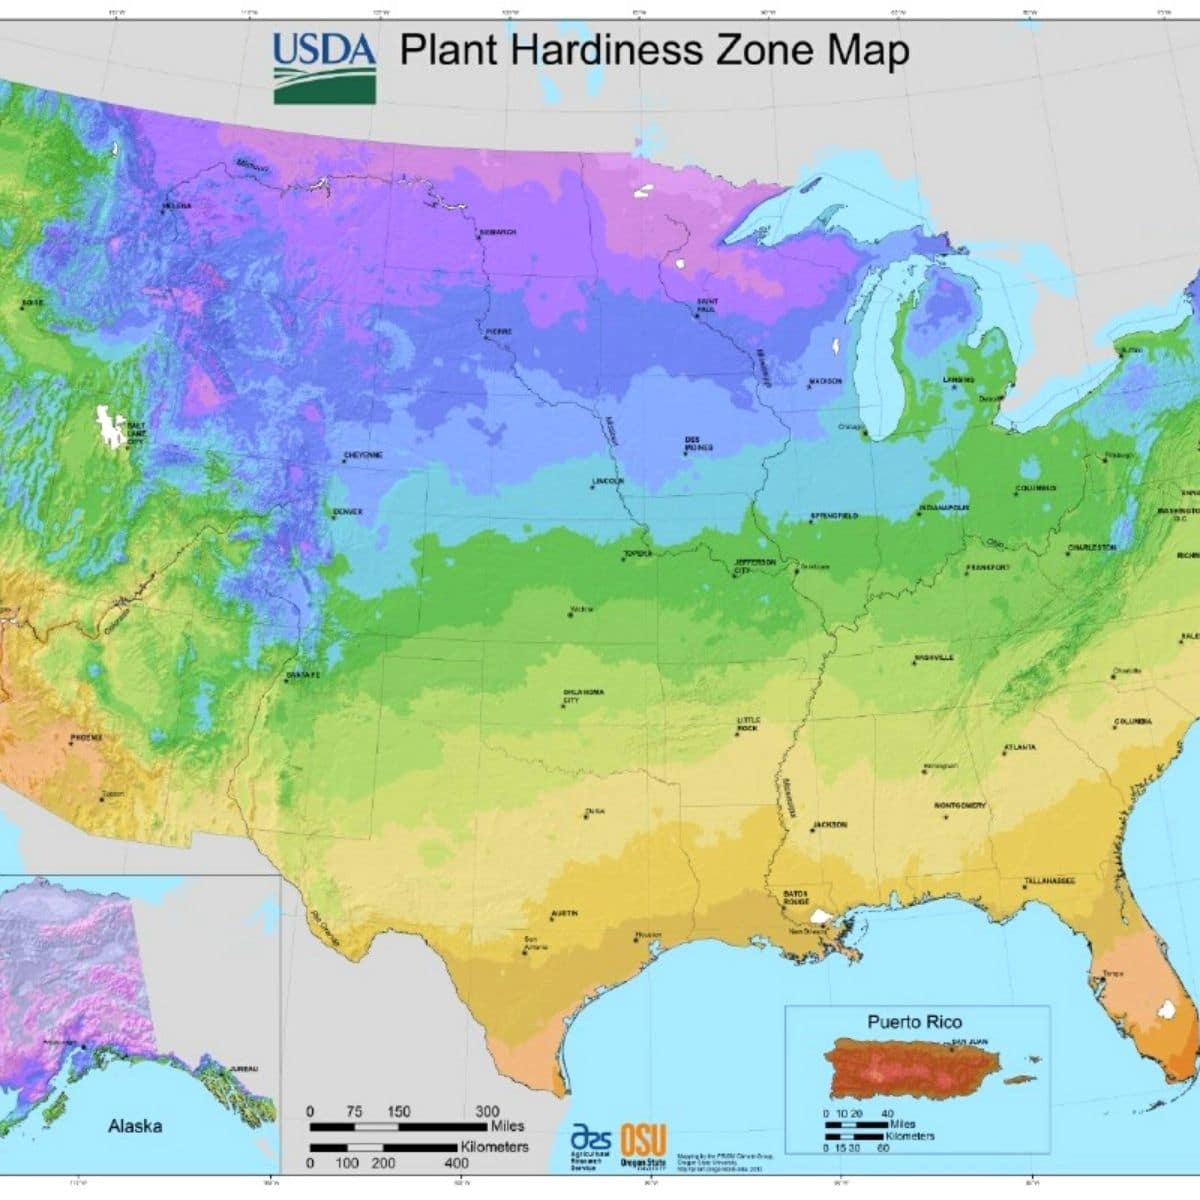 USDA plant hardiness zone map